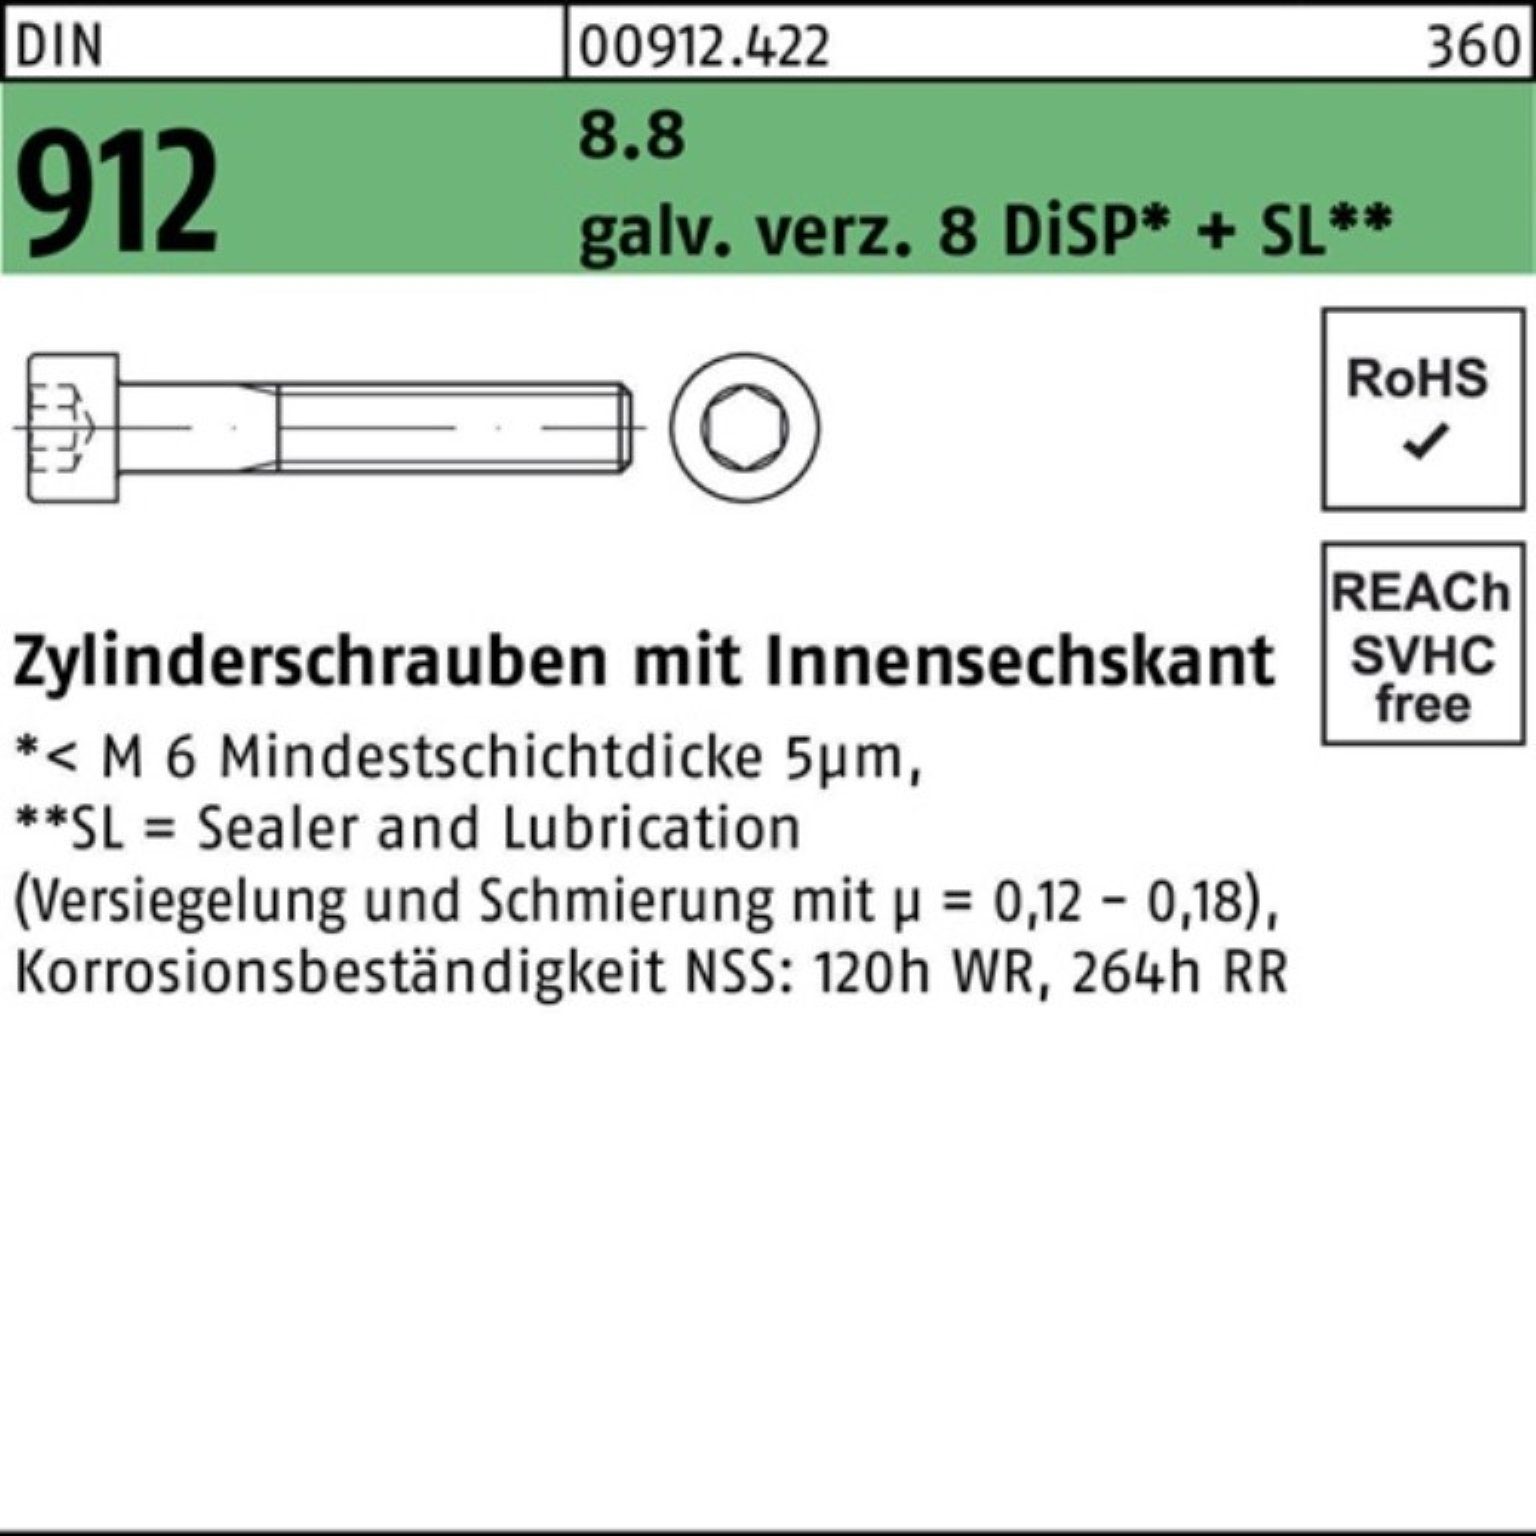 DIN Zylinderschraube Pack Zn Innen-6kt M10x20 DiSP 912 8 gal 8.8 Reyher 200er Zylinderschraube